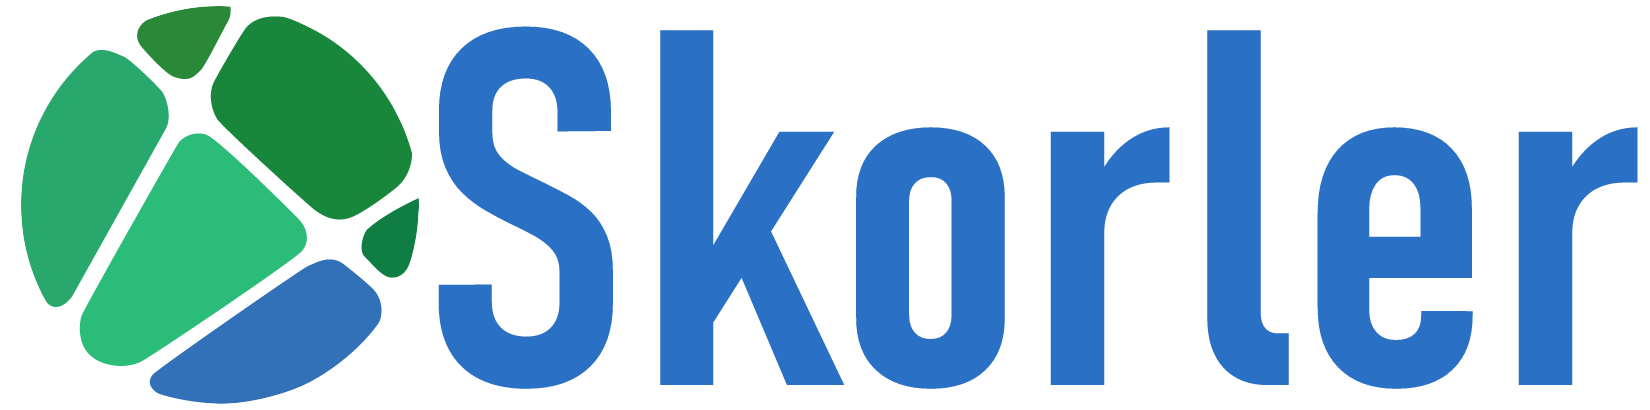 Skorler  dark logo